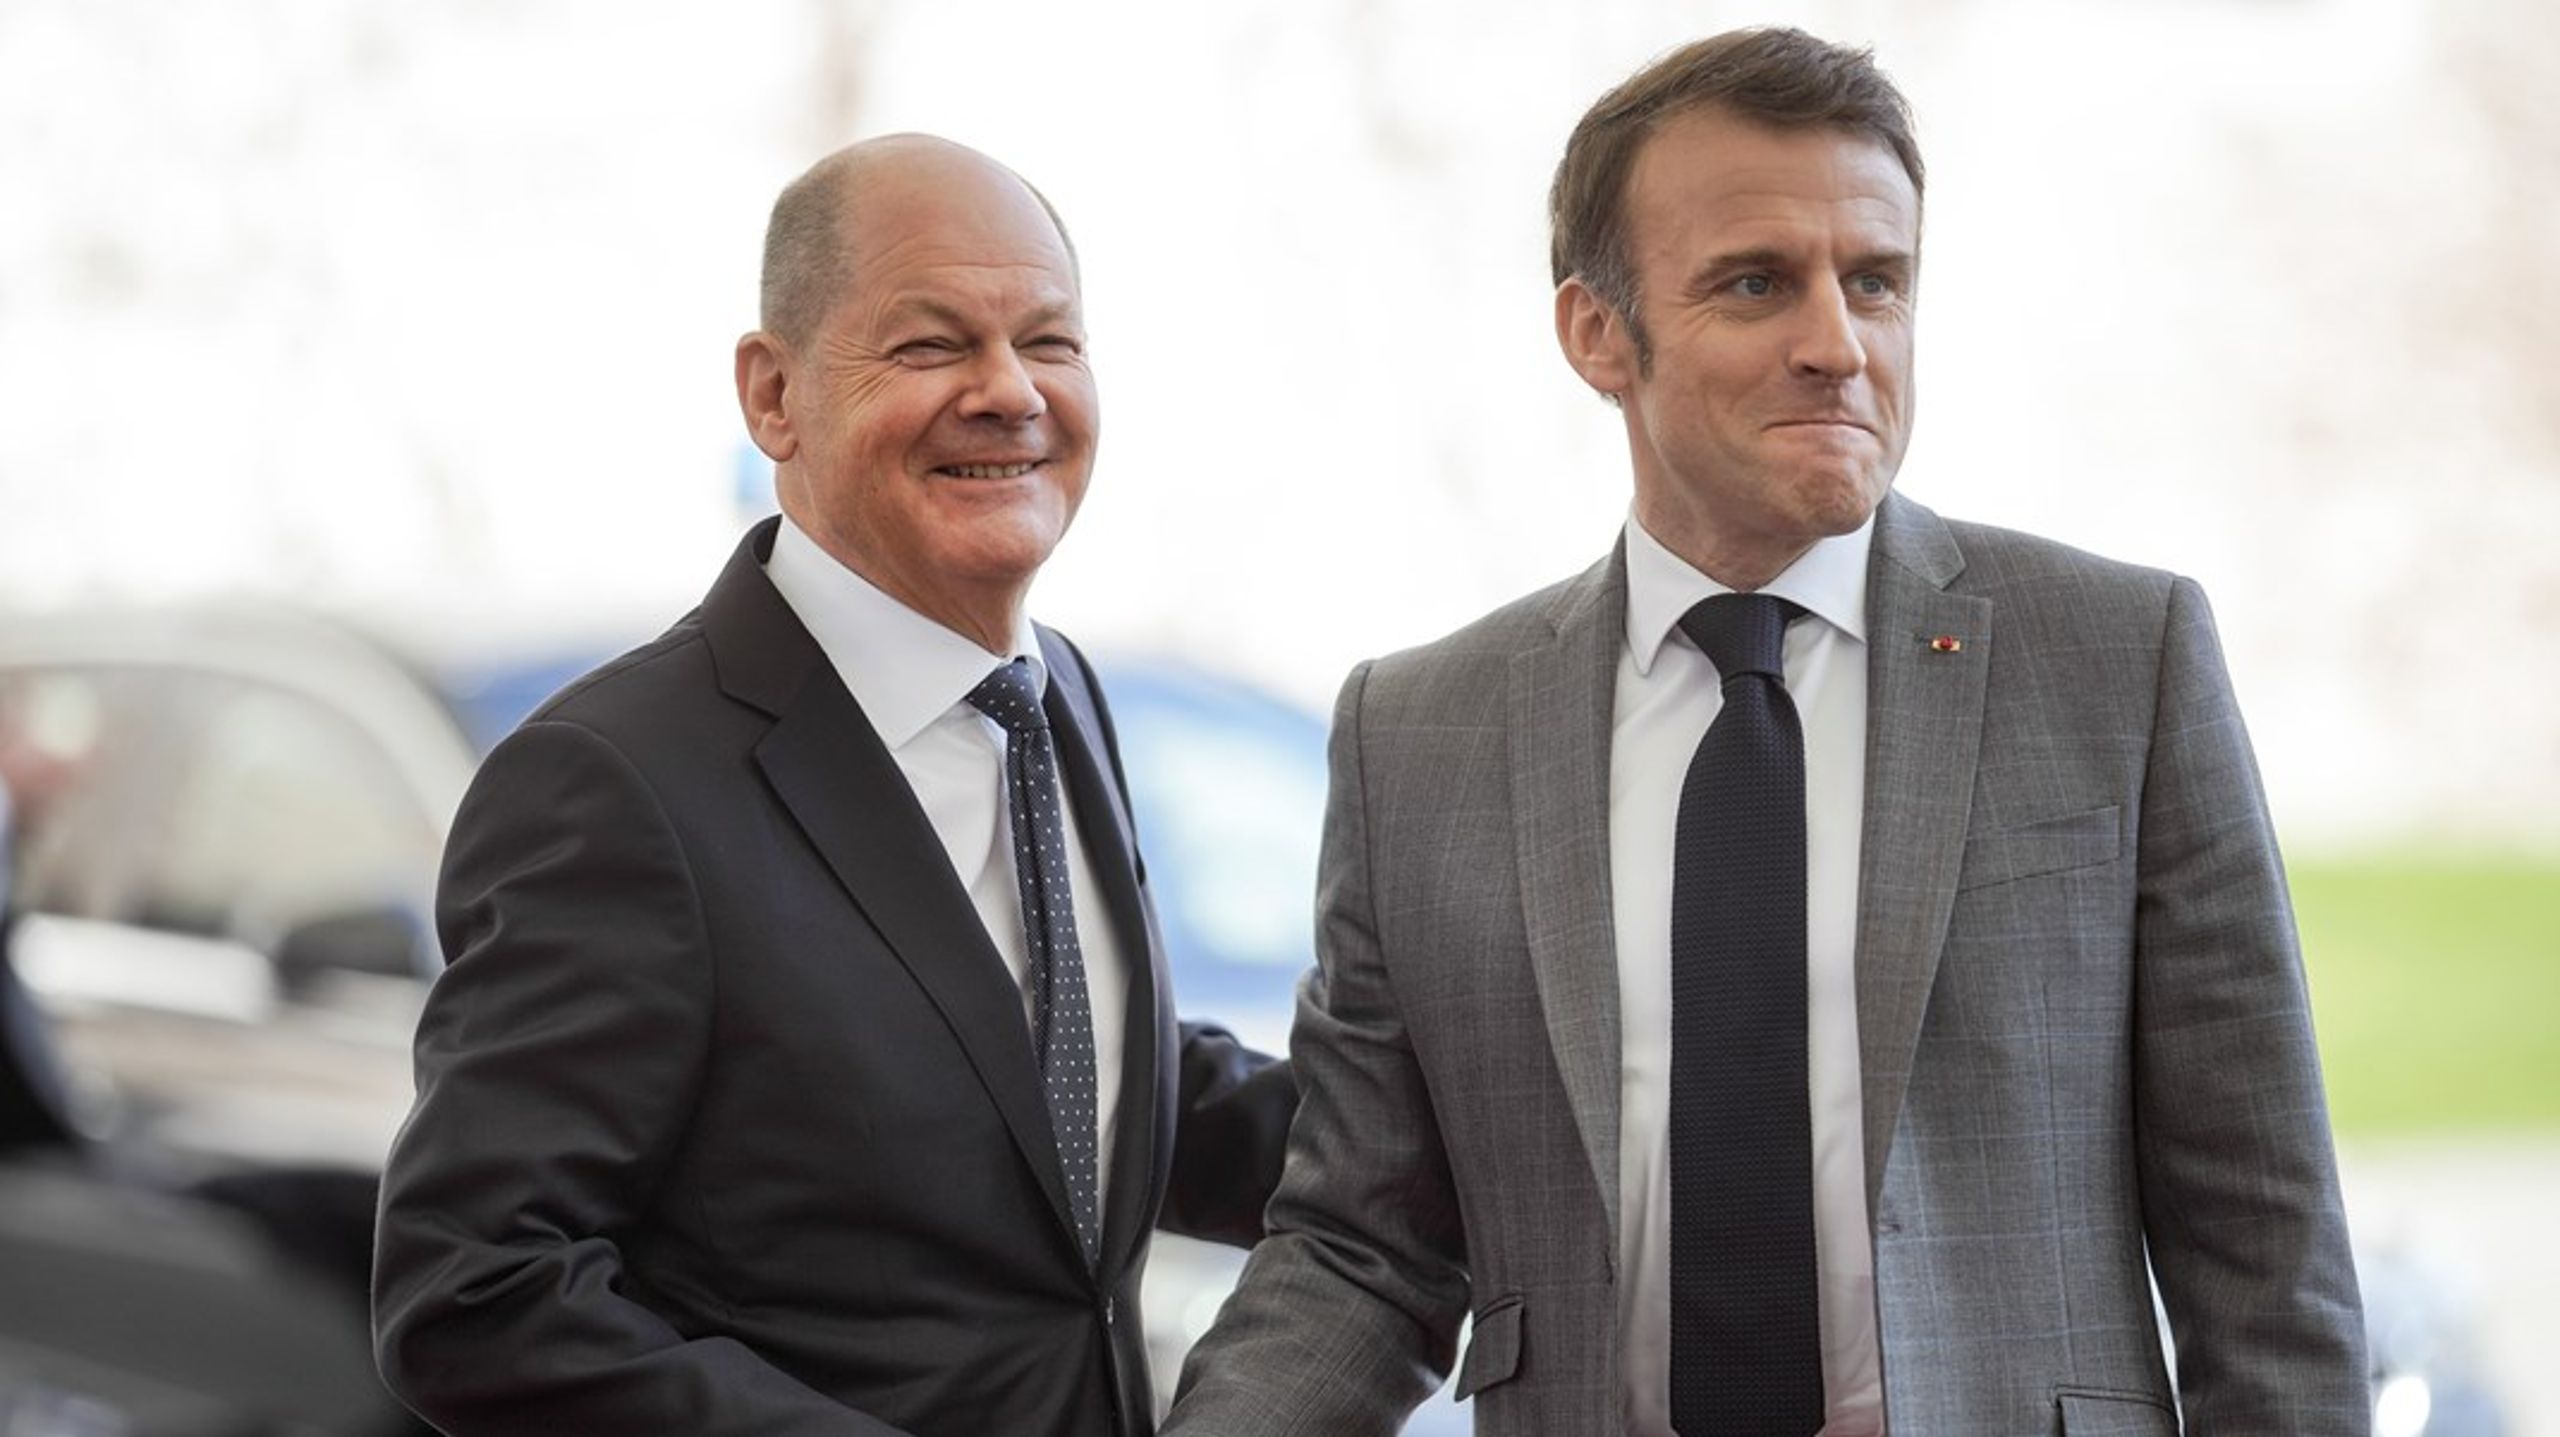 Tysklands forbundskansler Olaf Scholz og Frankrike-president Emmanuel Macron møtes i Brussel sammen med de andre EU-landenes ledere for å diskutere sikkerhetspolitikk.